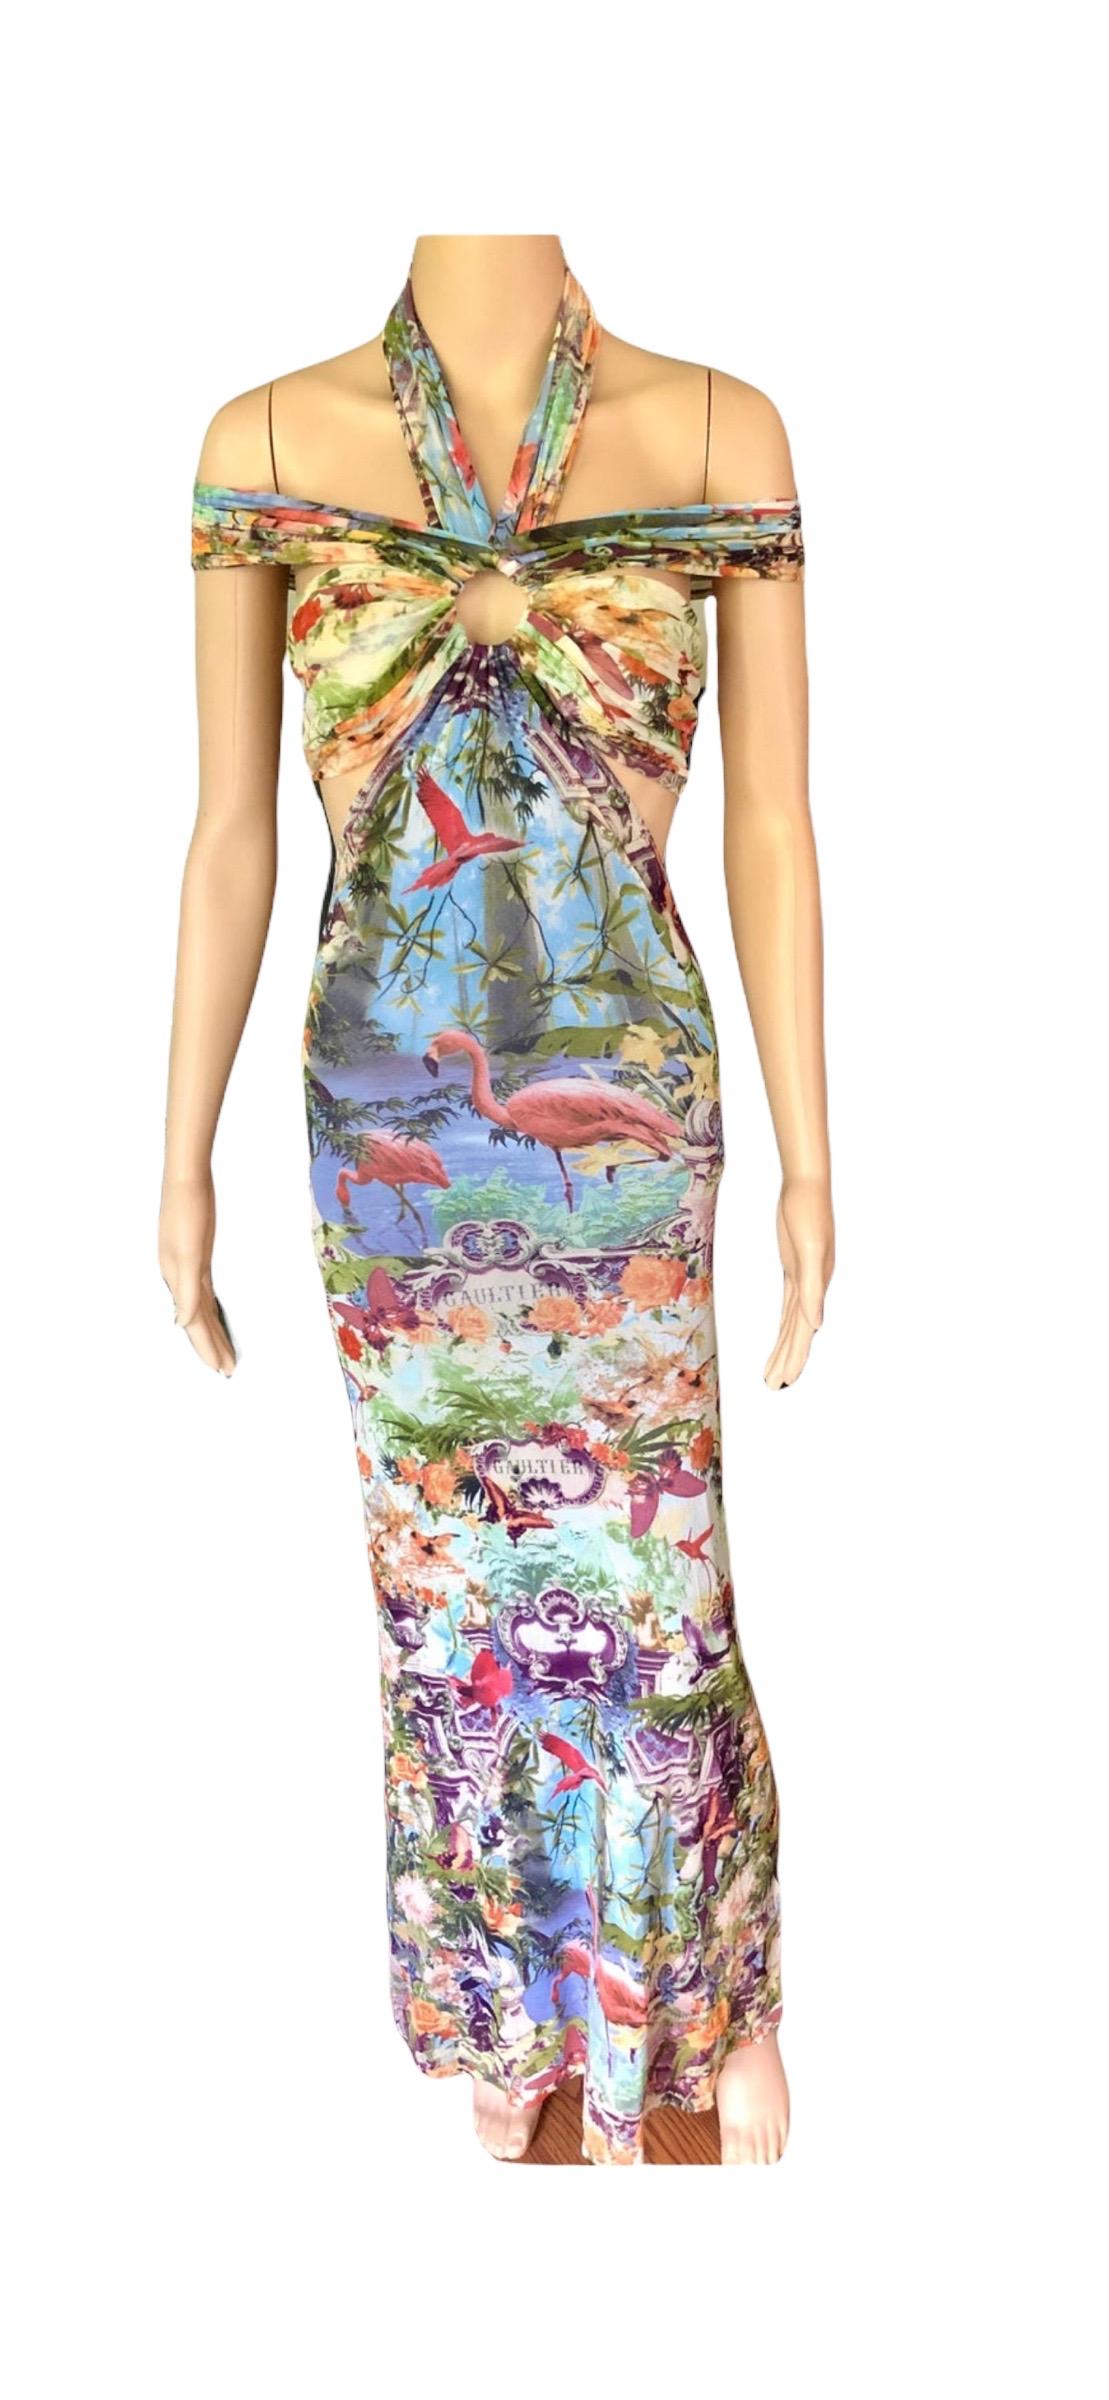 Jean Paul Gaultier Soleil S/S1999 Flamingo Tropical Print Cutout Mesh Maxi Dress For Sale 7